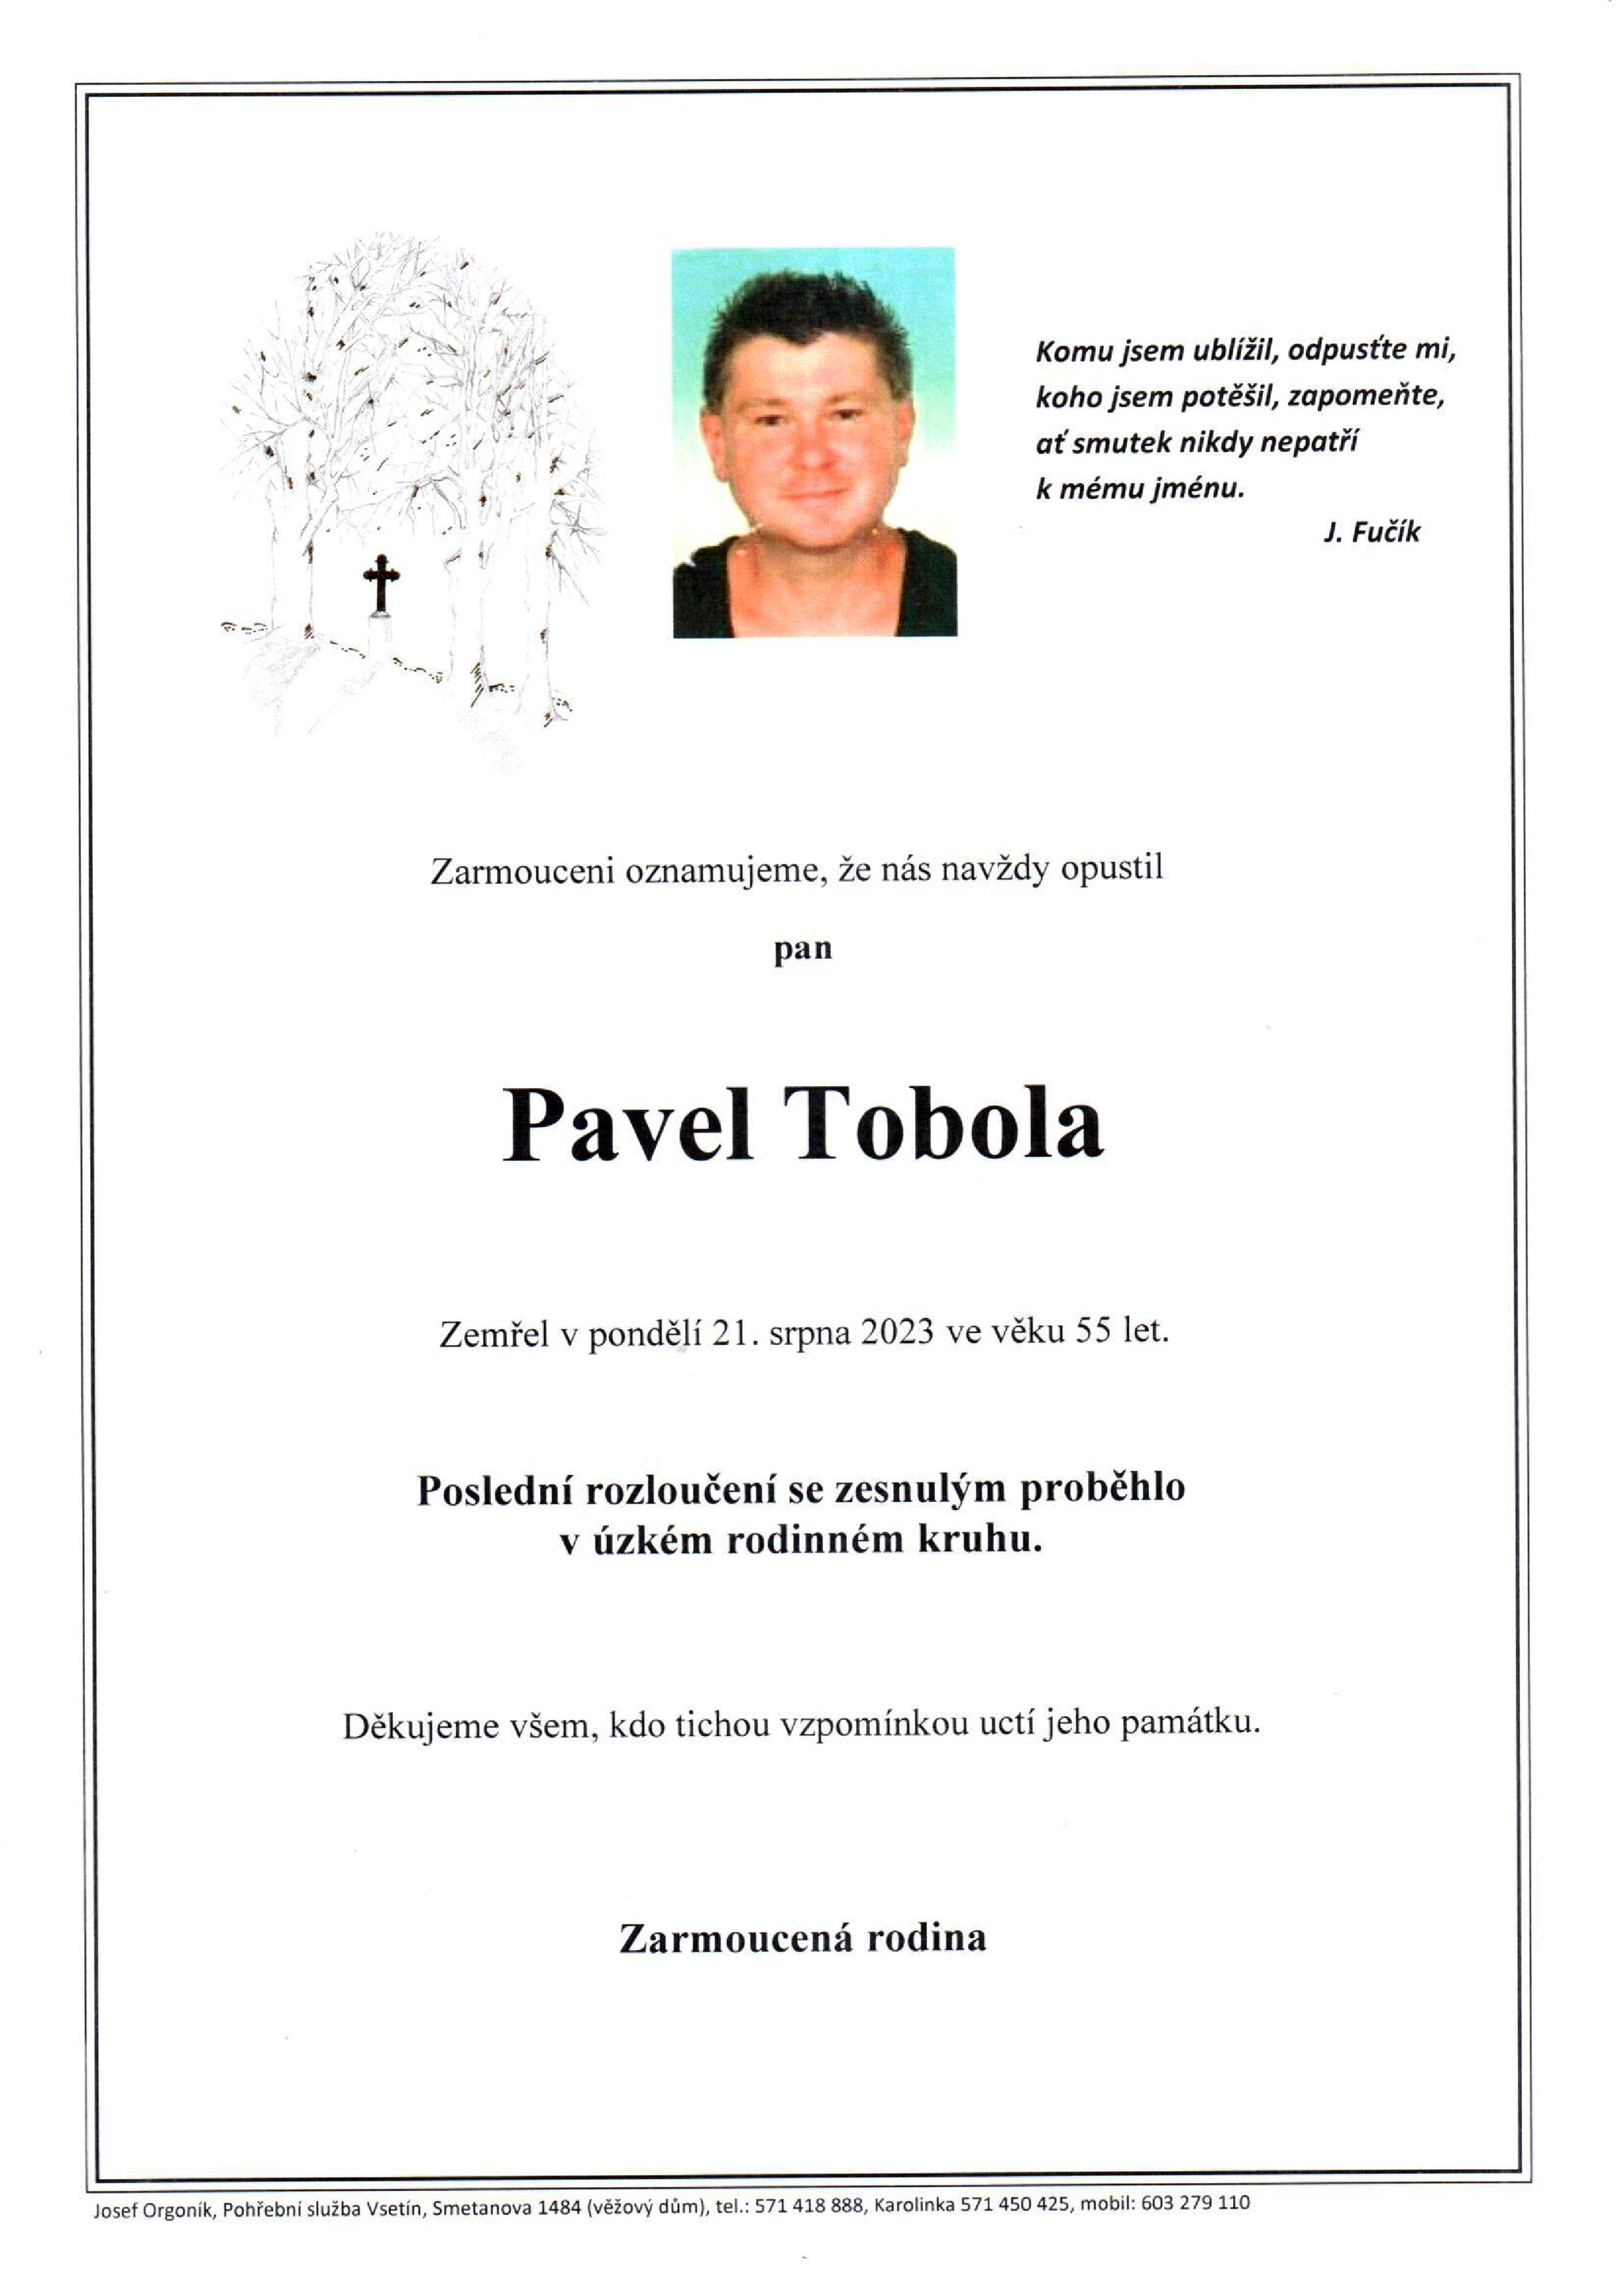 Pavel Tobola